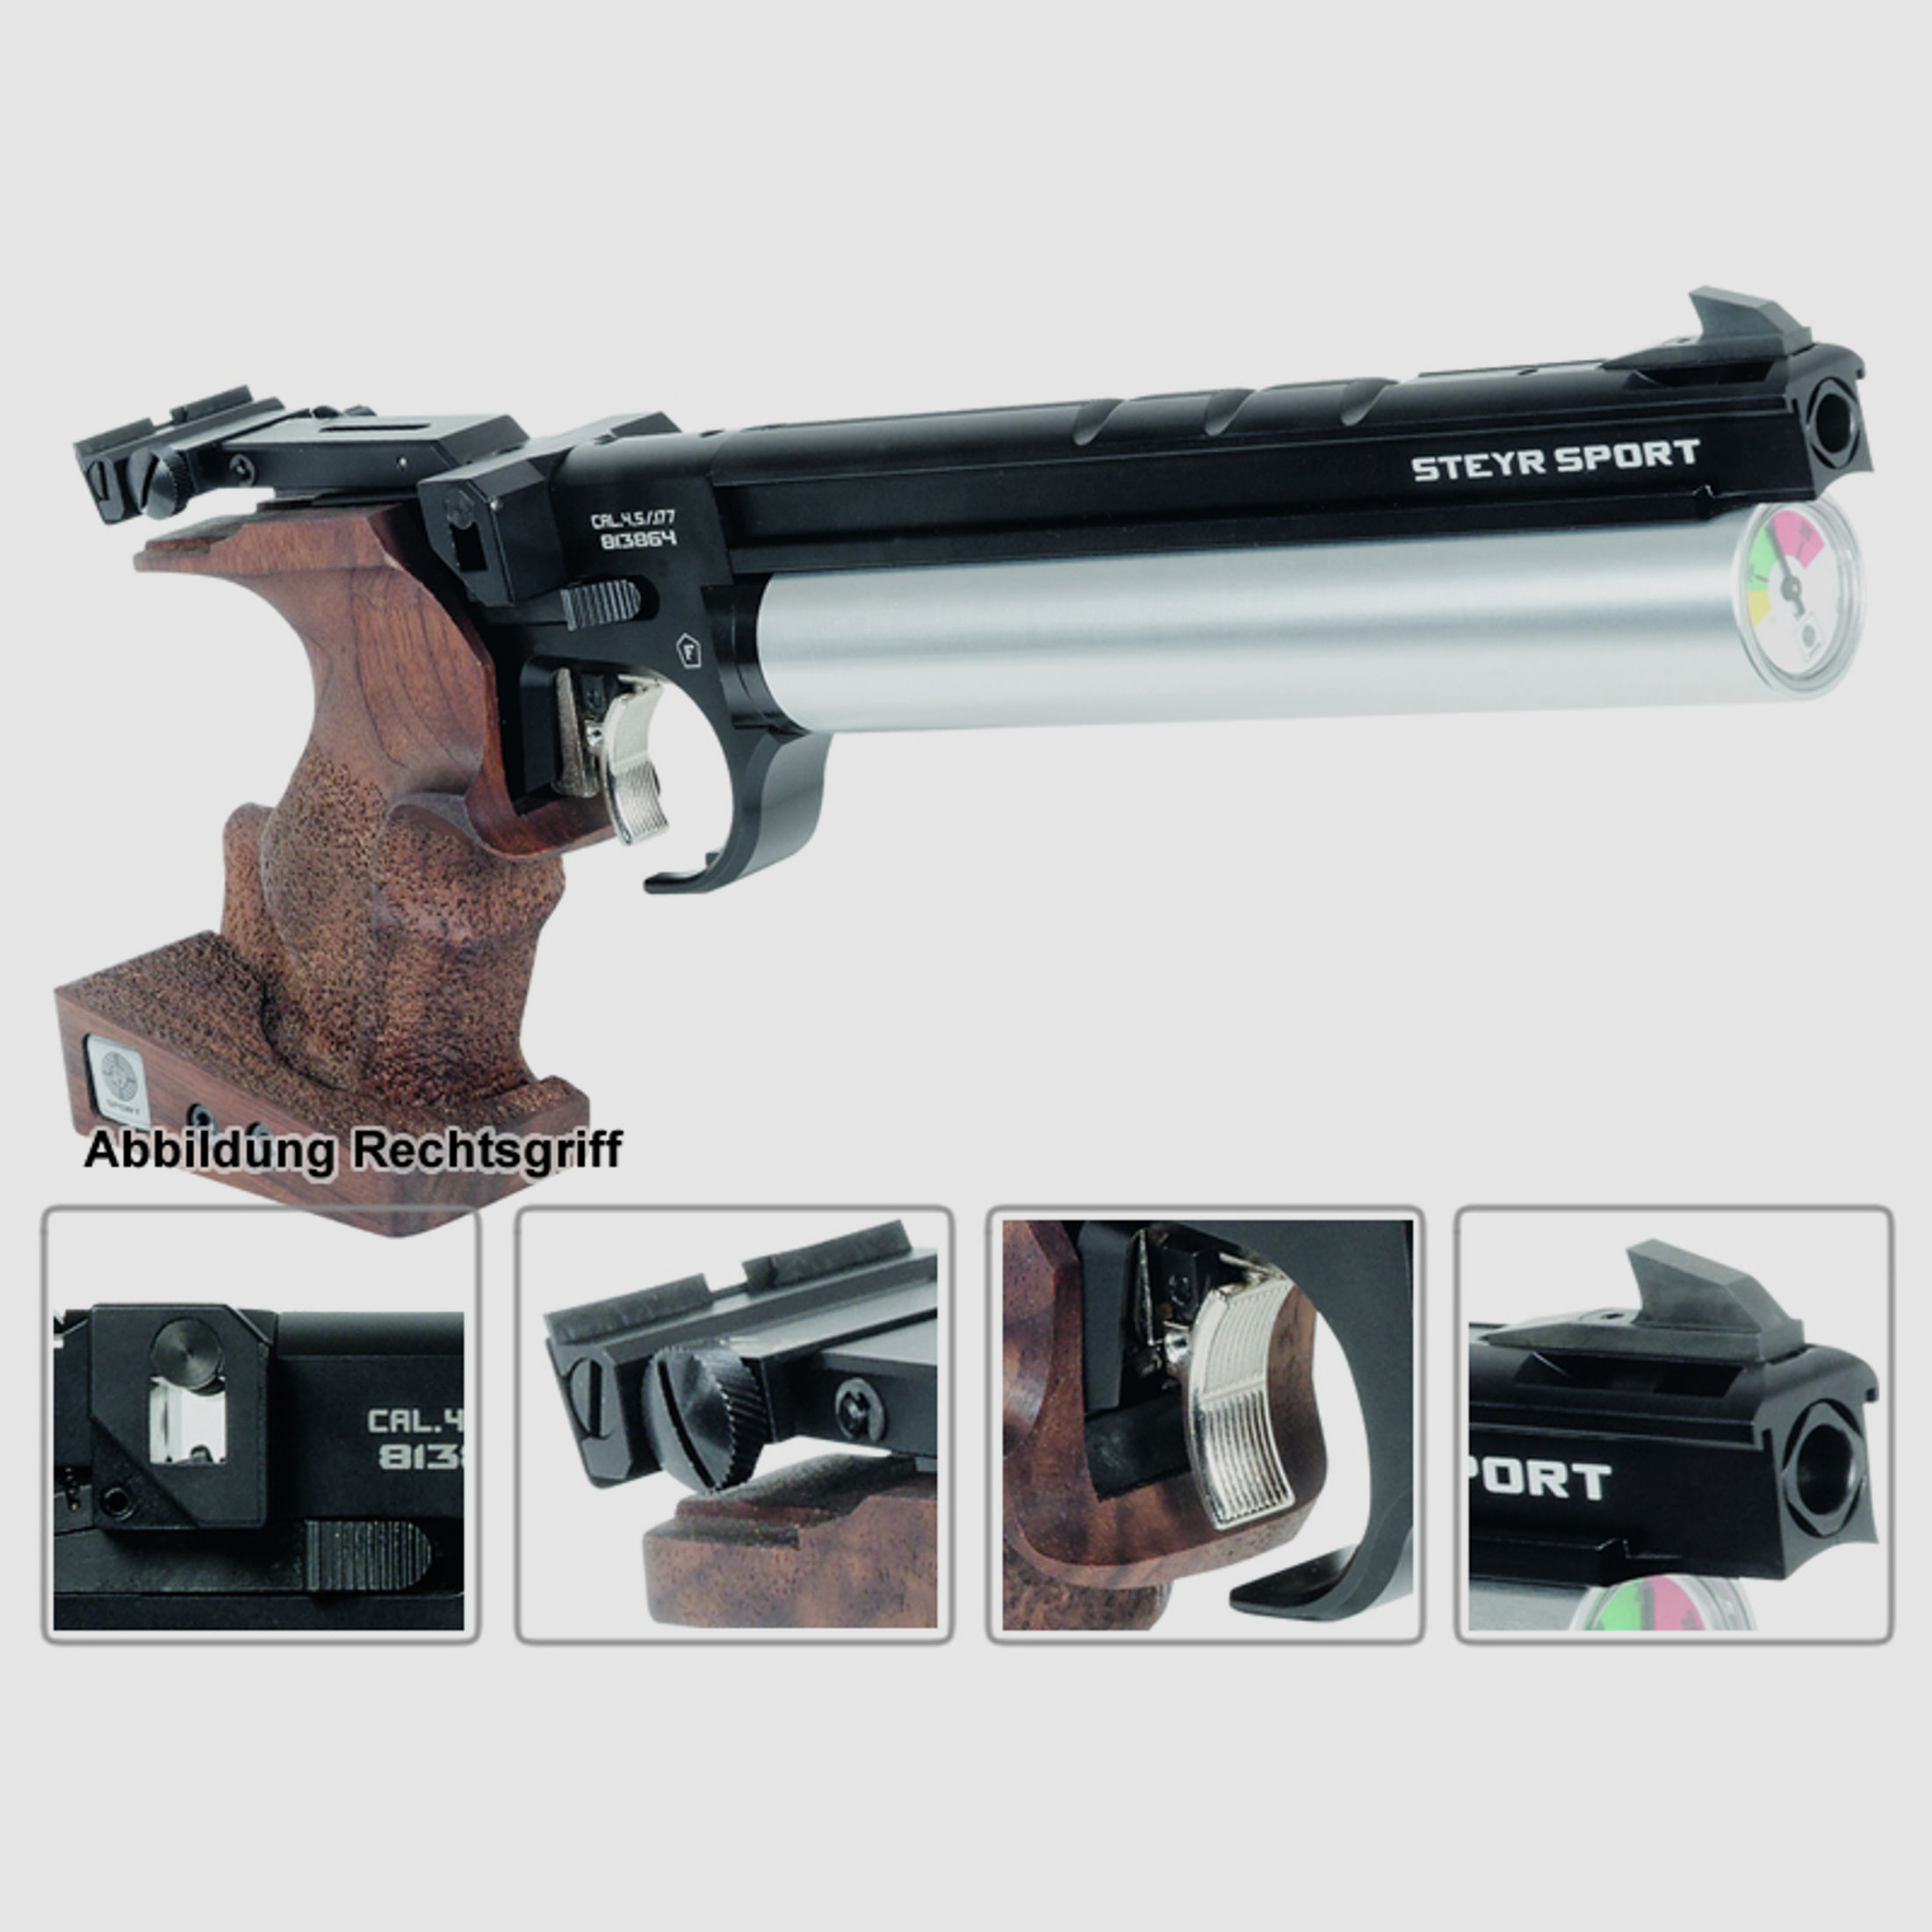 Match Pressluftpistole STEYR LP50 RF, 5er Magazin, silberne Kartusche, Rechtsgriff (P18)